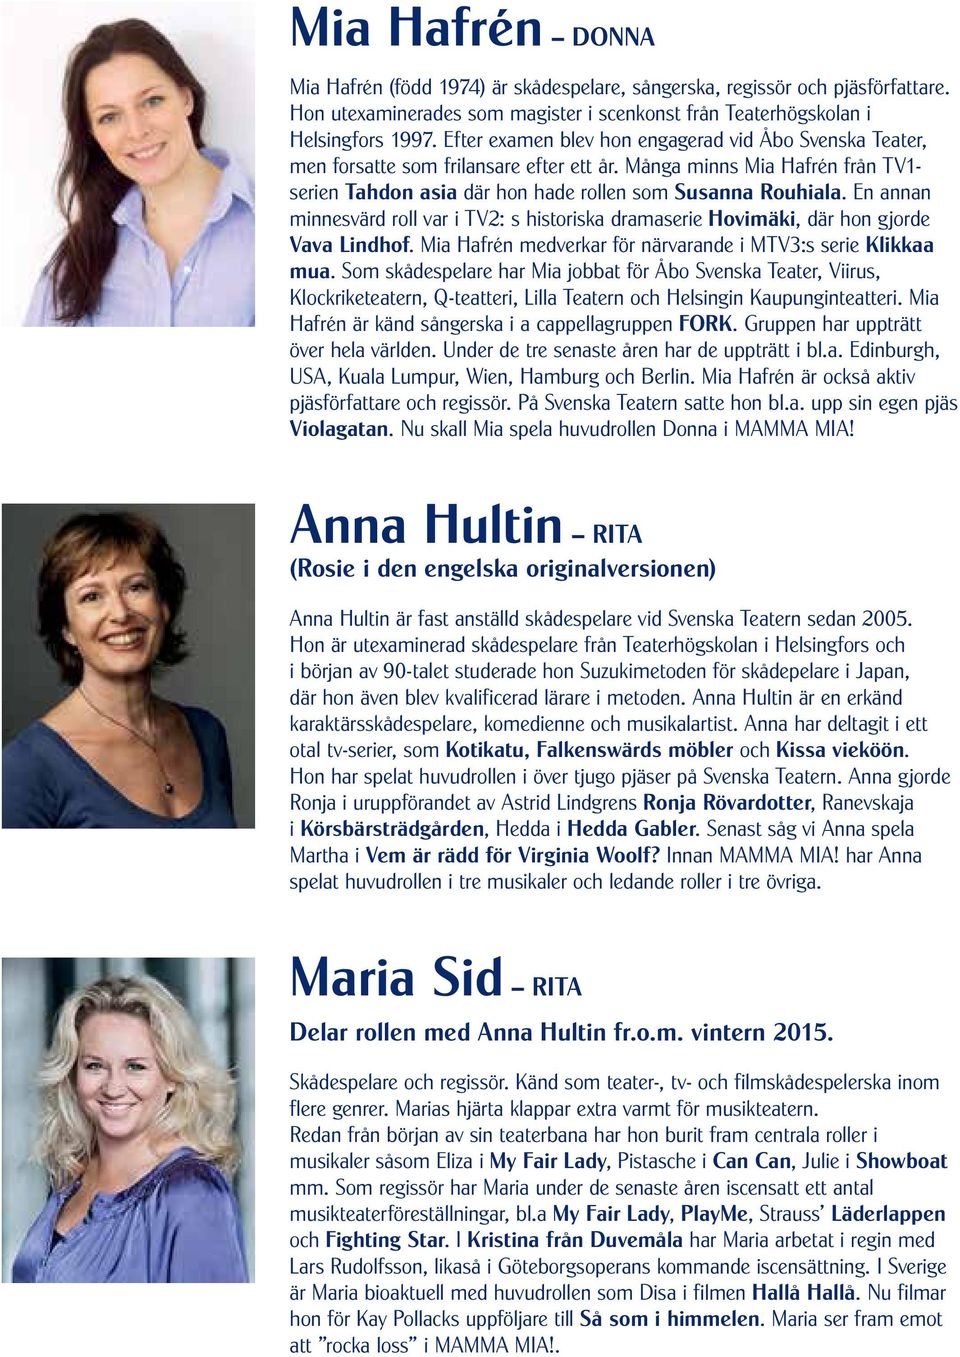 En annan minnesvärd roll var i TV2: s historiska dramaserie Hovimäki, där hon gjorde Vava Lindhof. Mia Hafrén medverkar för närvarande i MTV3:s serie Klikkaa mua.